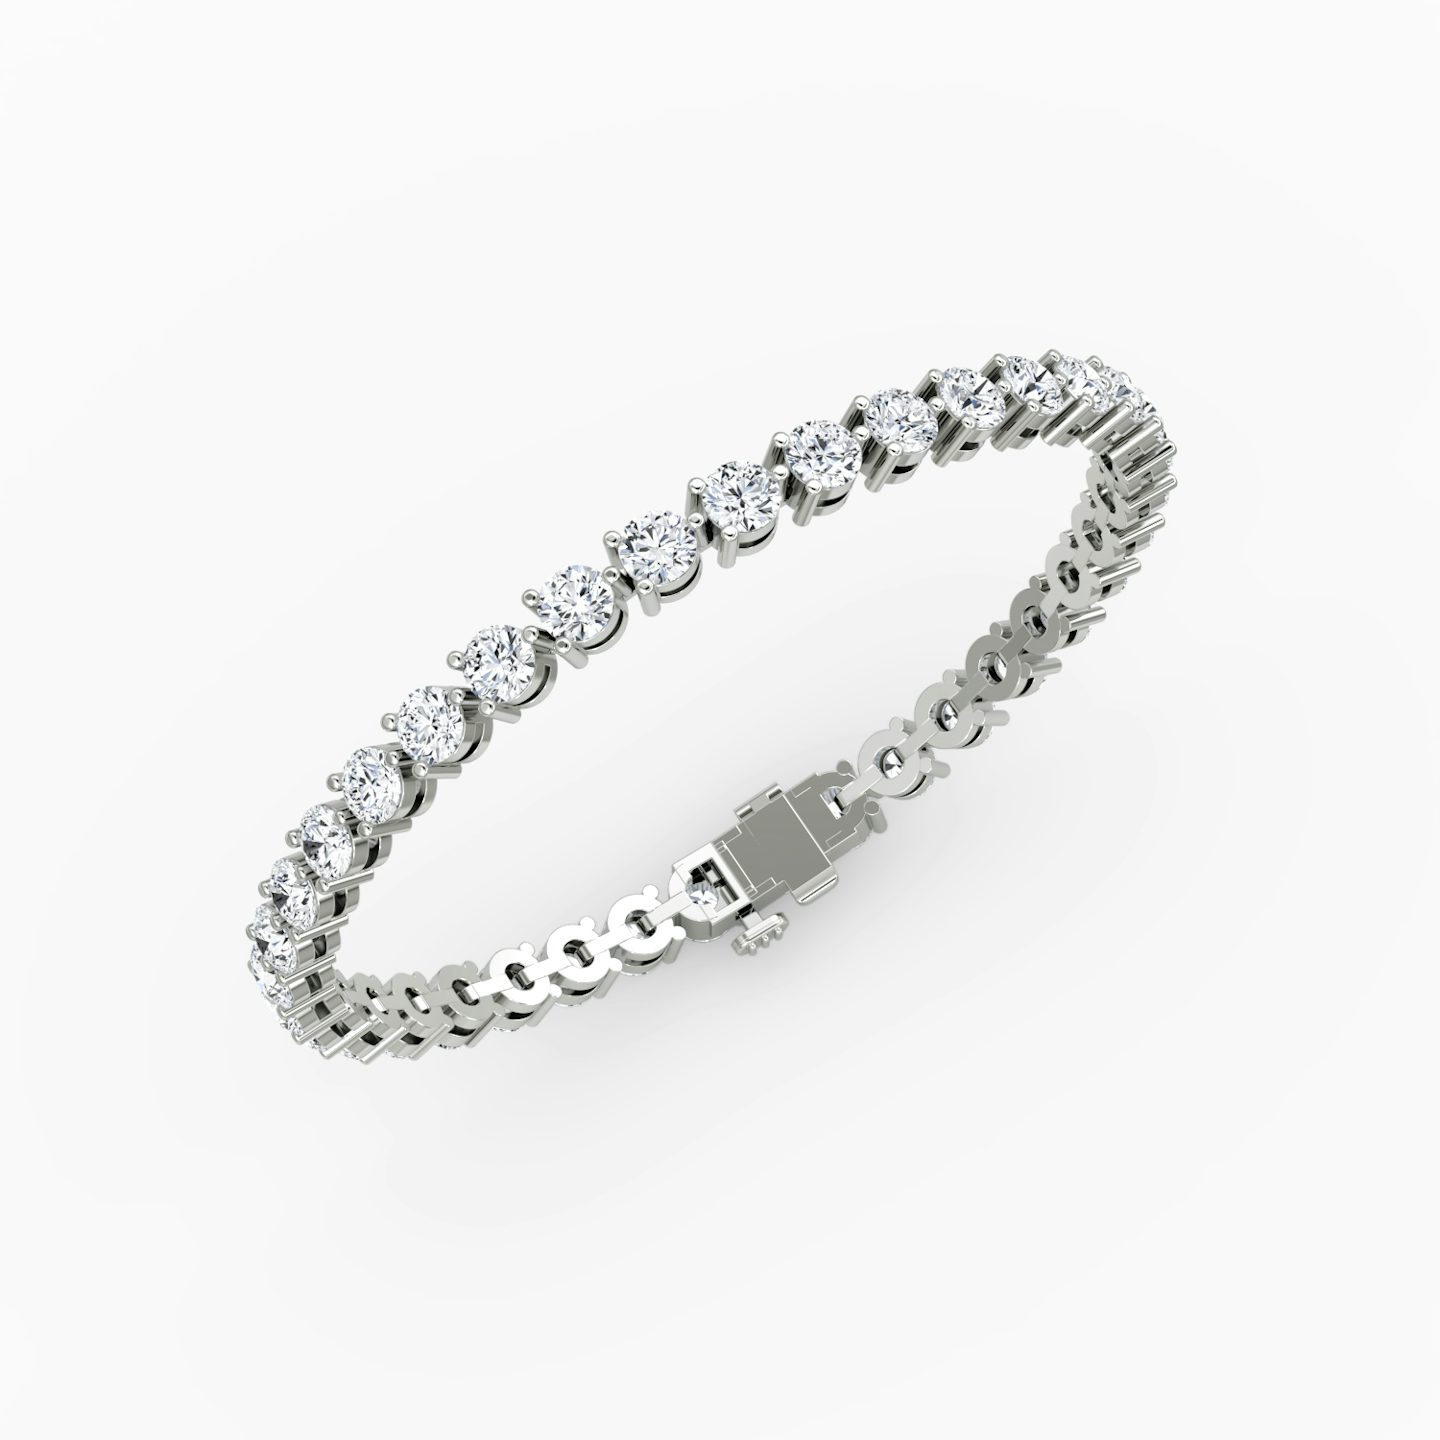 Bracelet Tennis | Rond Brillant | 14k | Or blanc 18 carats | Taille des diamants: Large | Longueur de la chaîne: 5.5